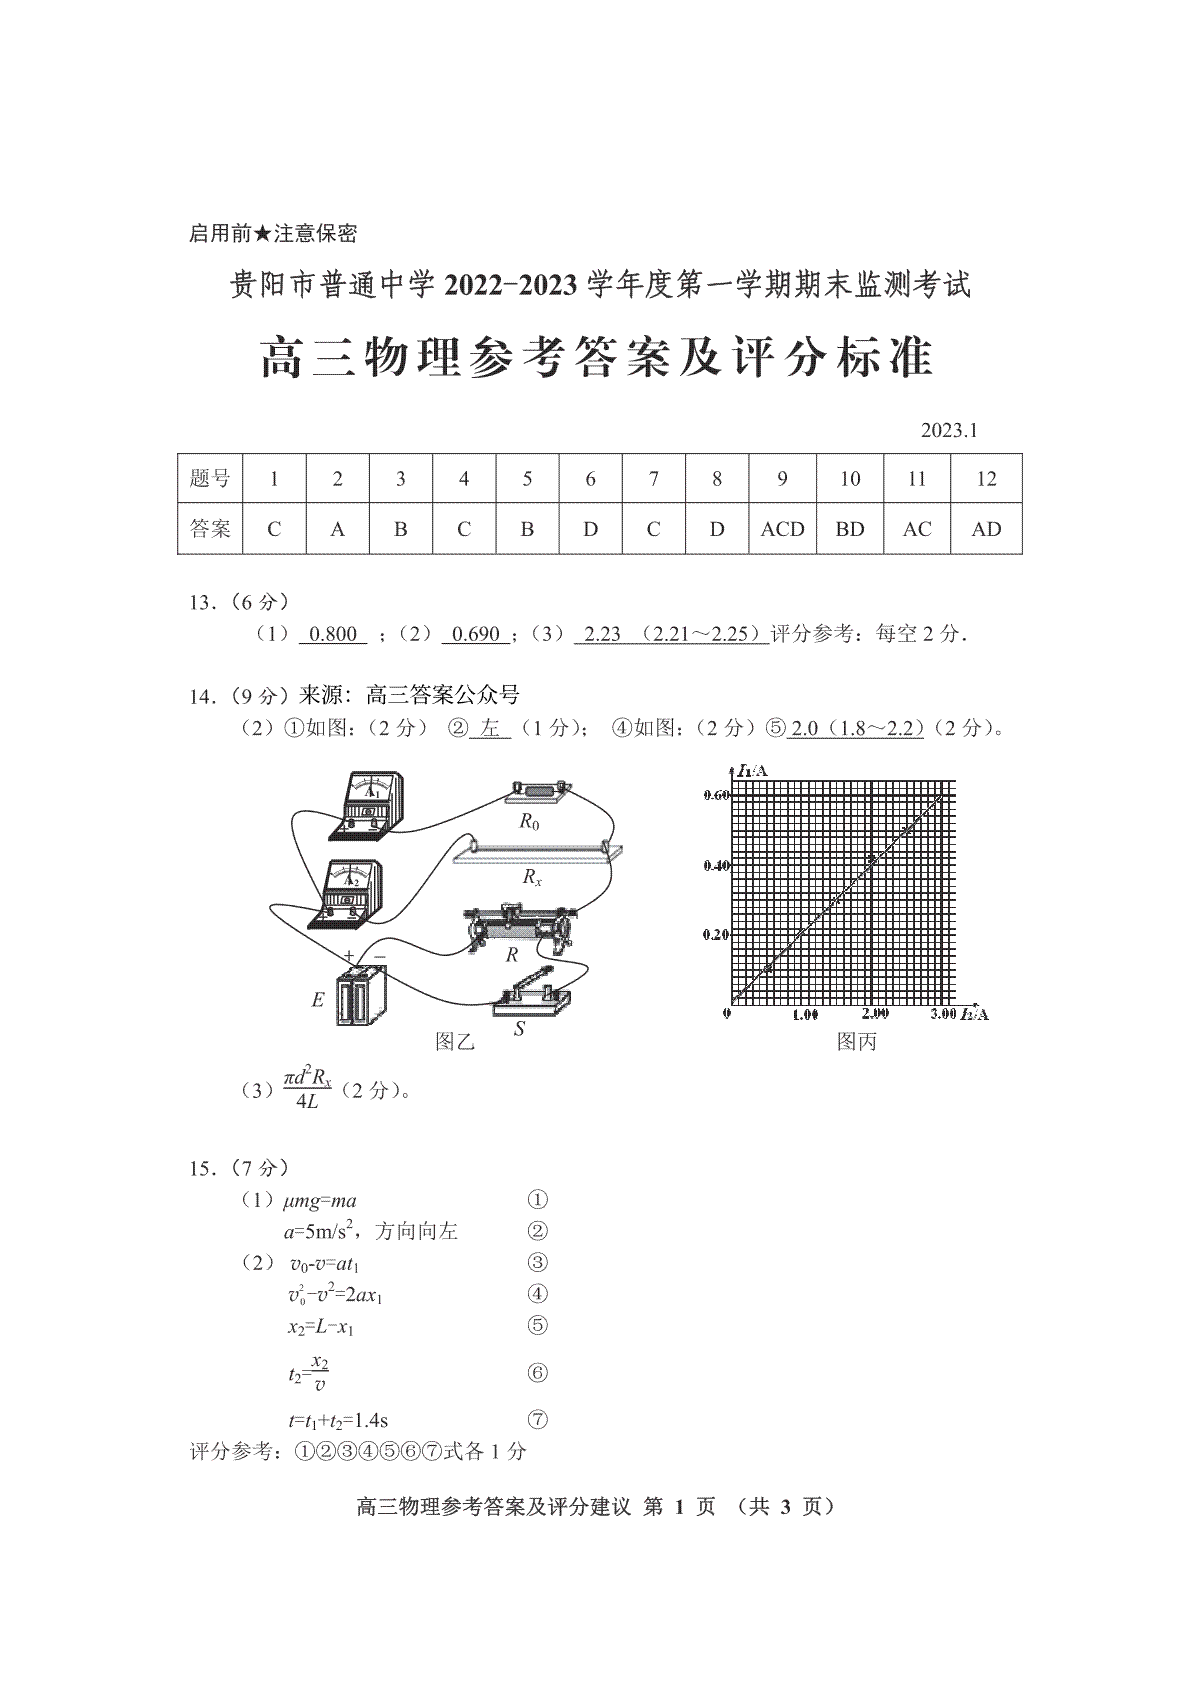 贵阳市普通中学 2022-2023 学年度第一学期期末监测考试试卷高三地物理答案